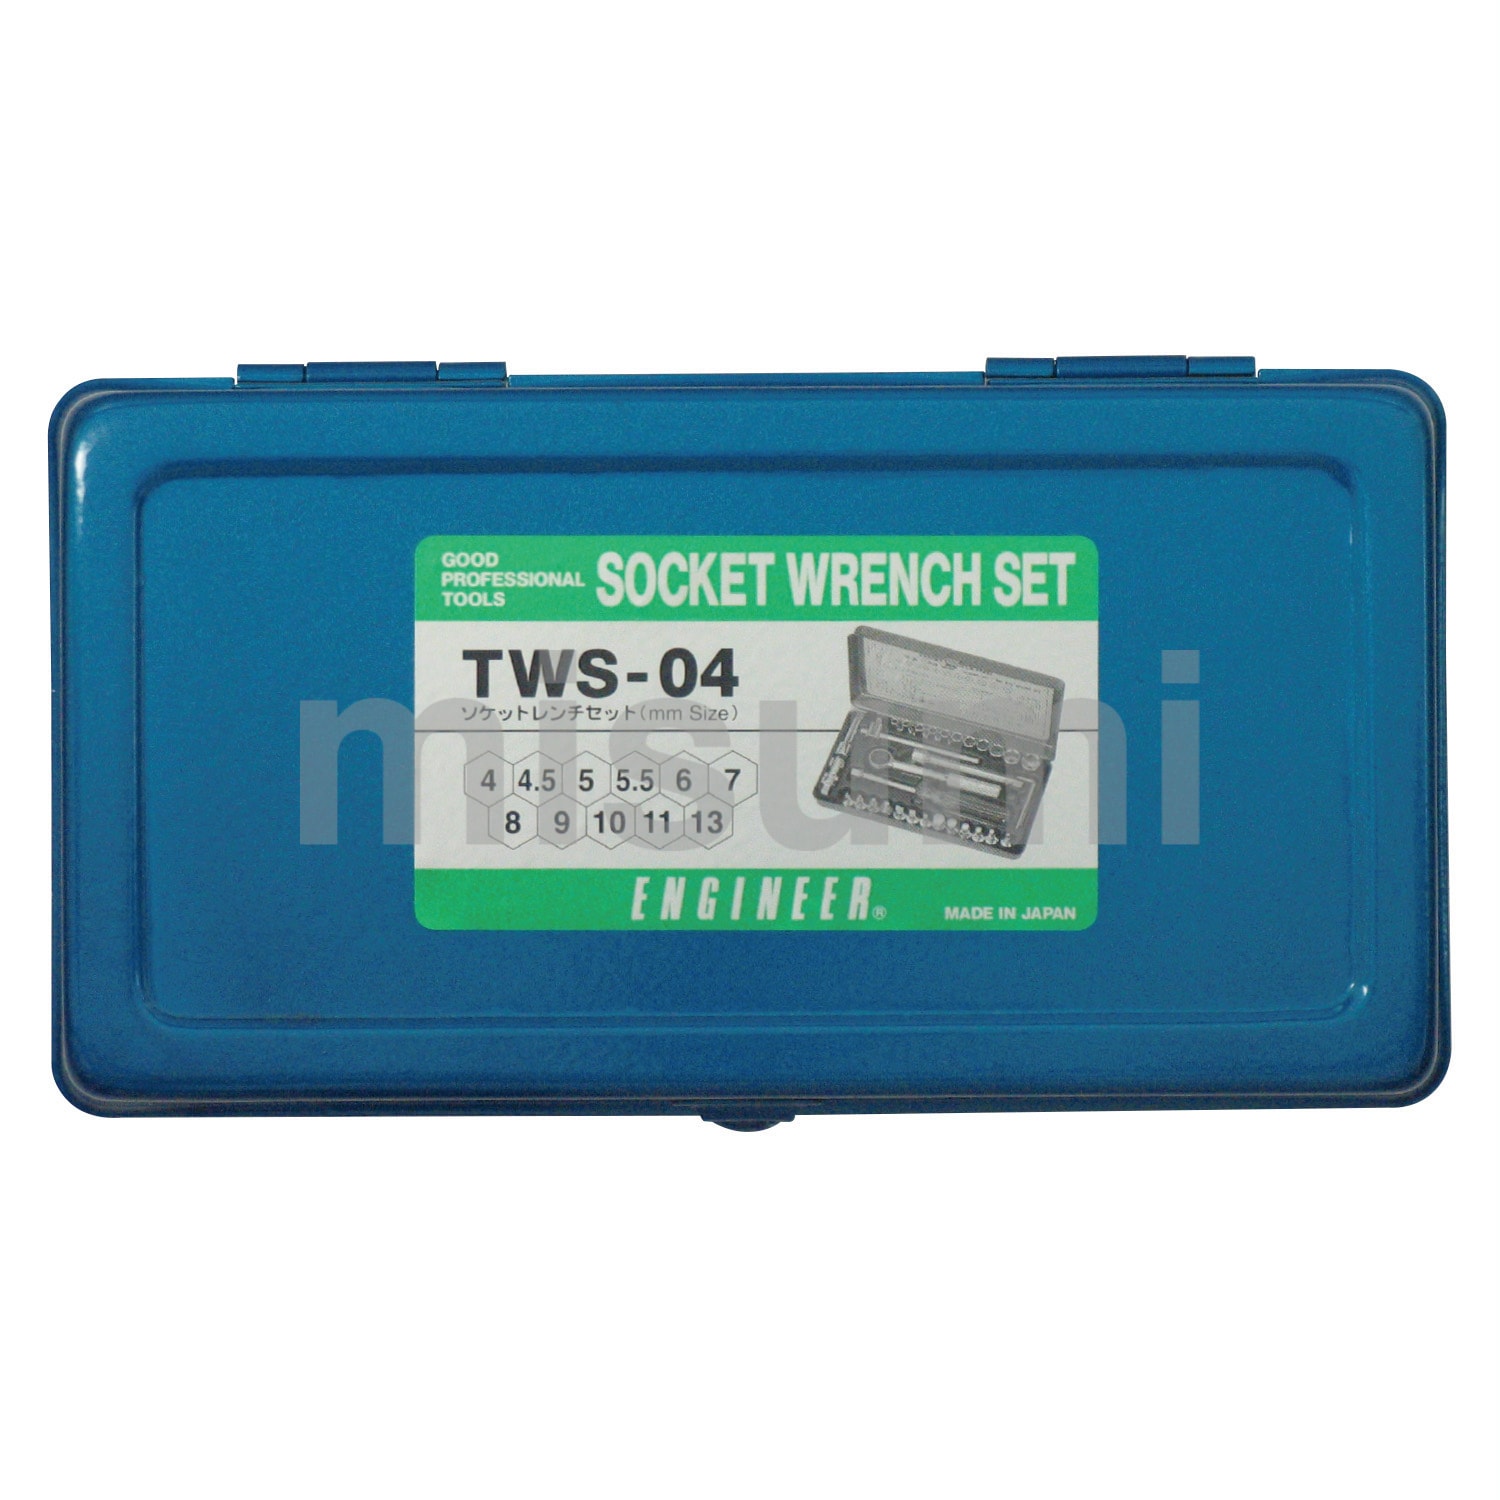 ソケットレンチセット TWS-04 | エンジニア | MISUMI(ミスミ)